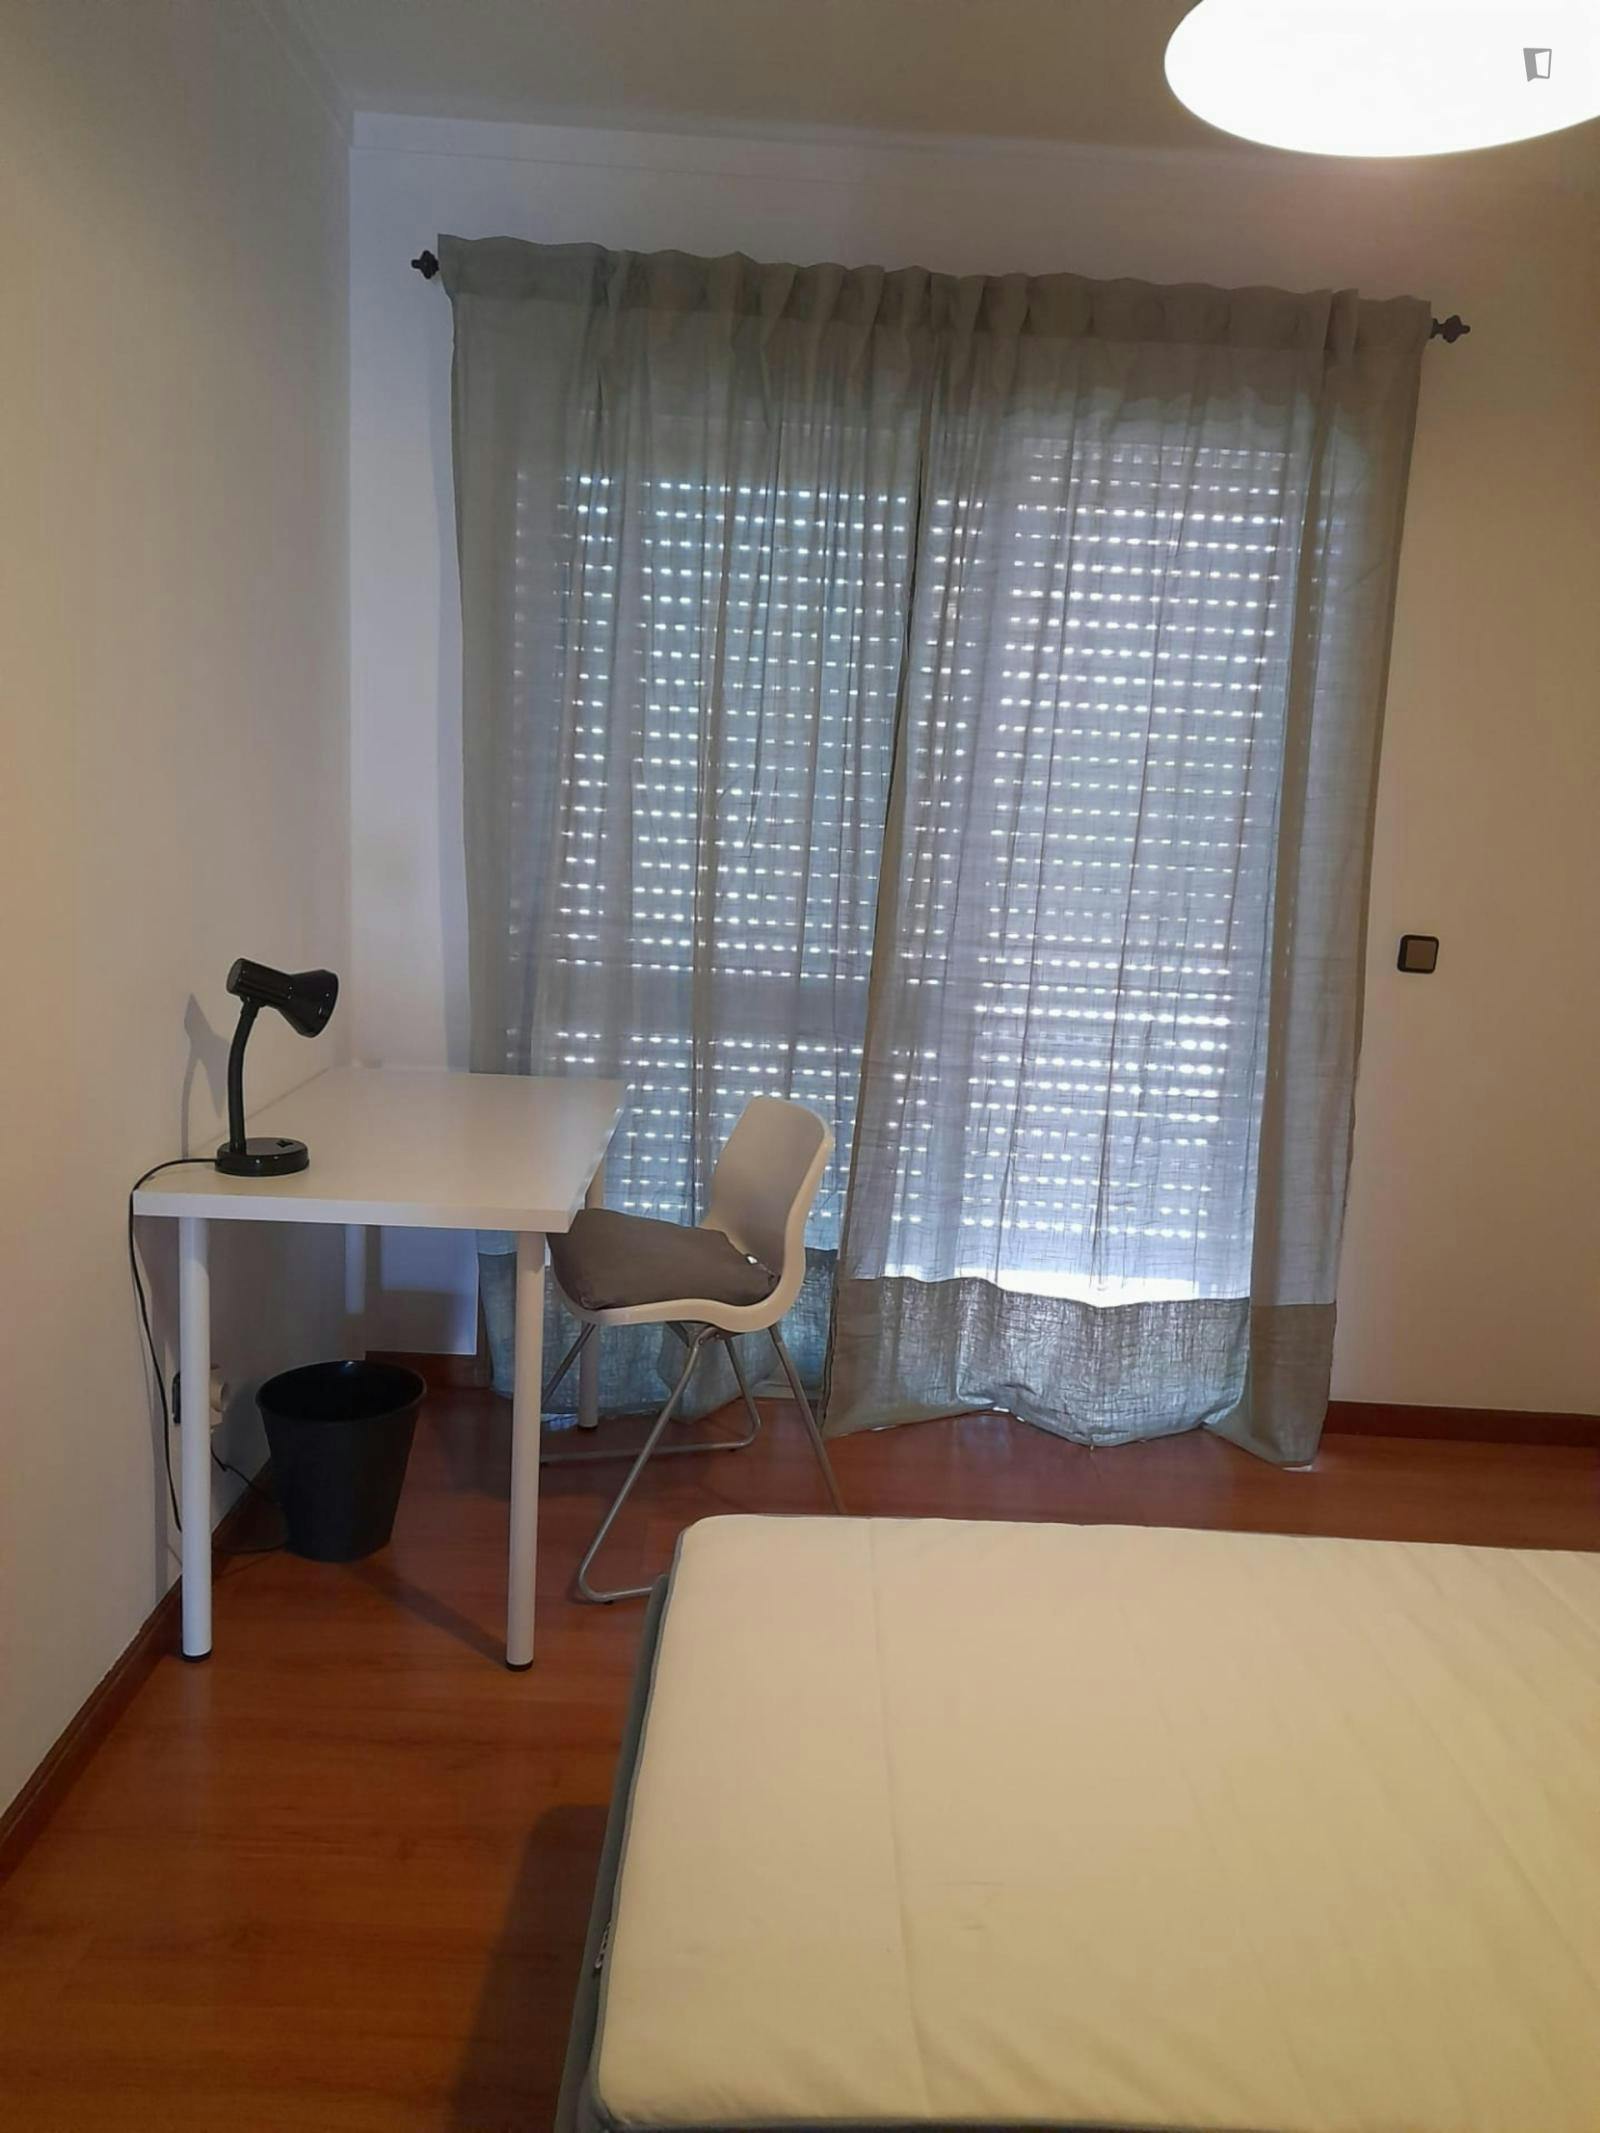 Comfy single bedroom close to Universidade do Minho